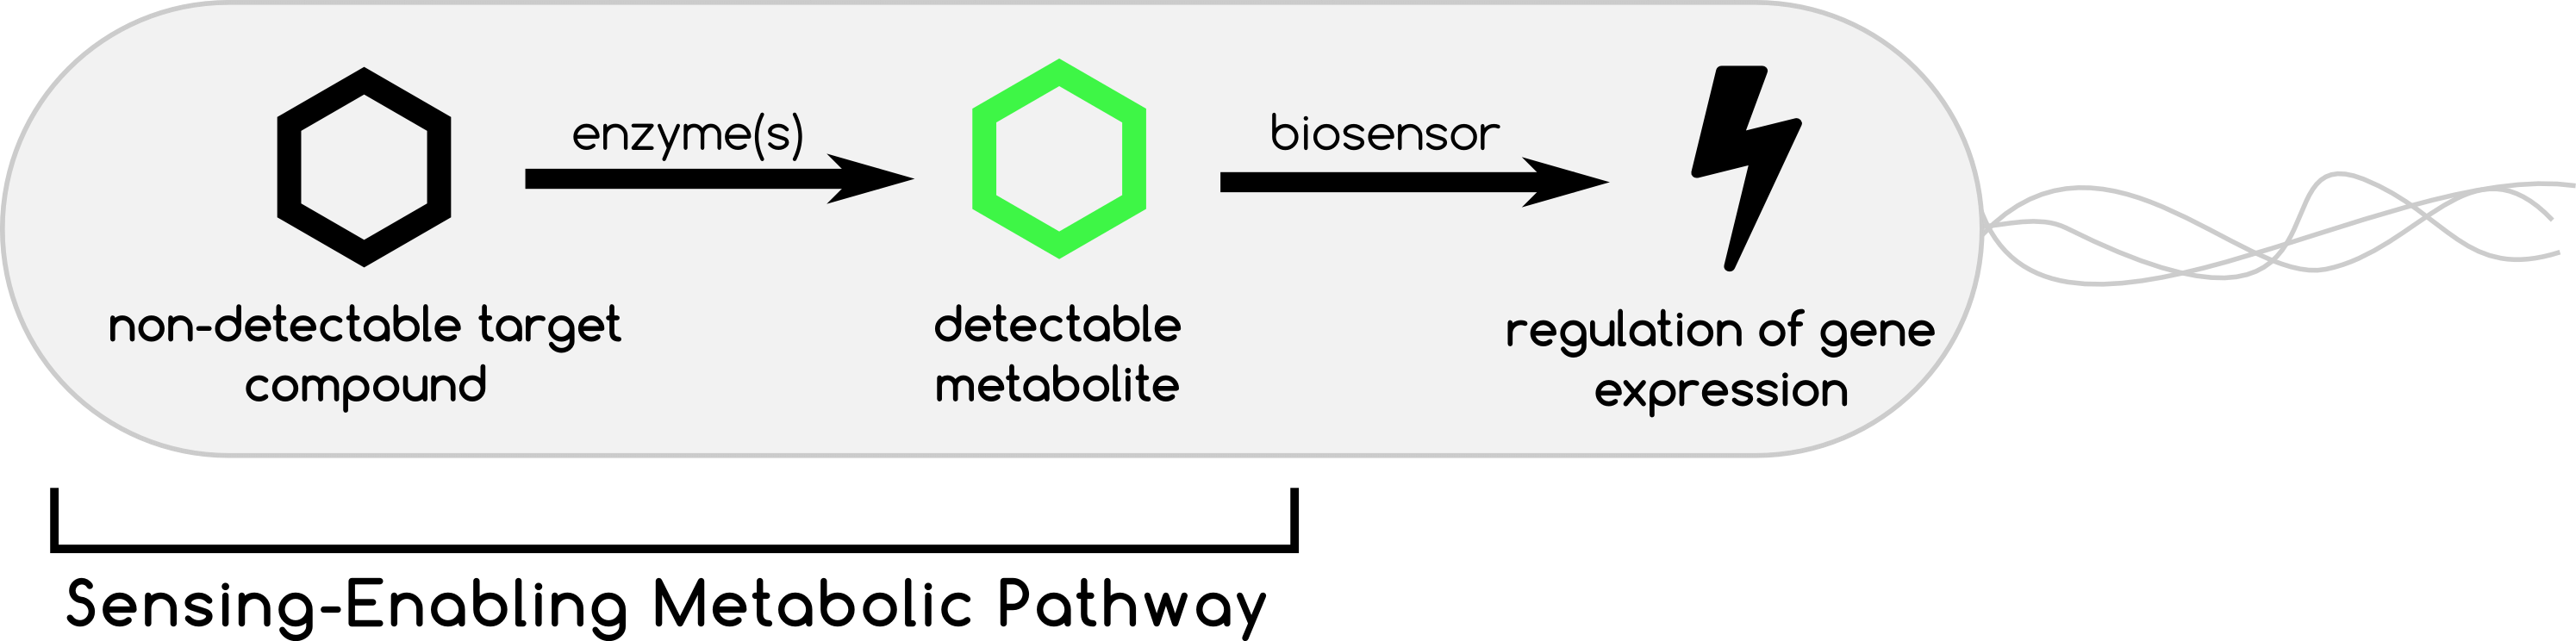 Sensing-Enabling Metabolic Pathway concept scheme.